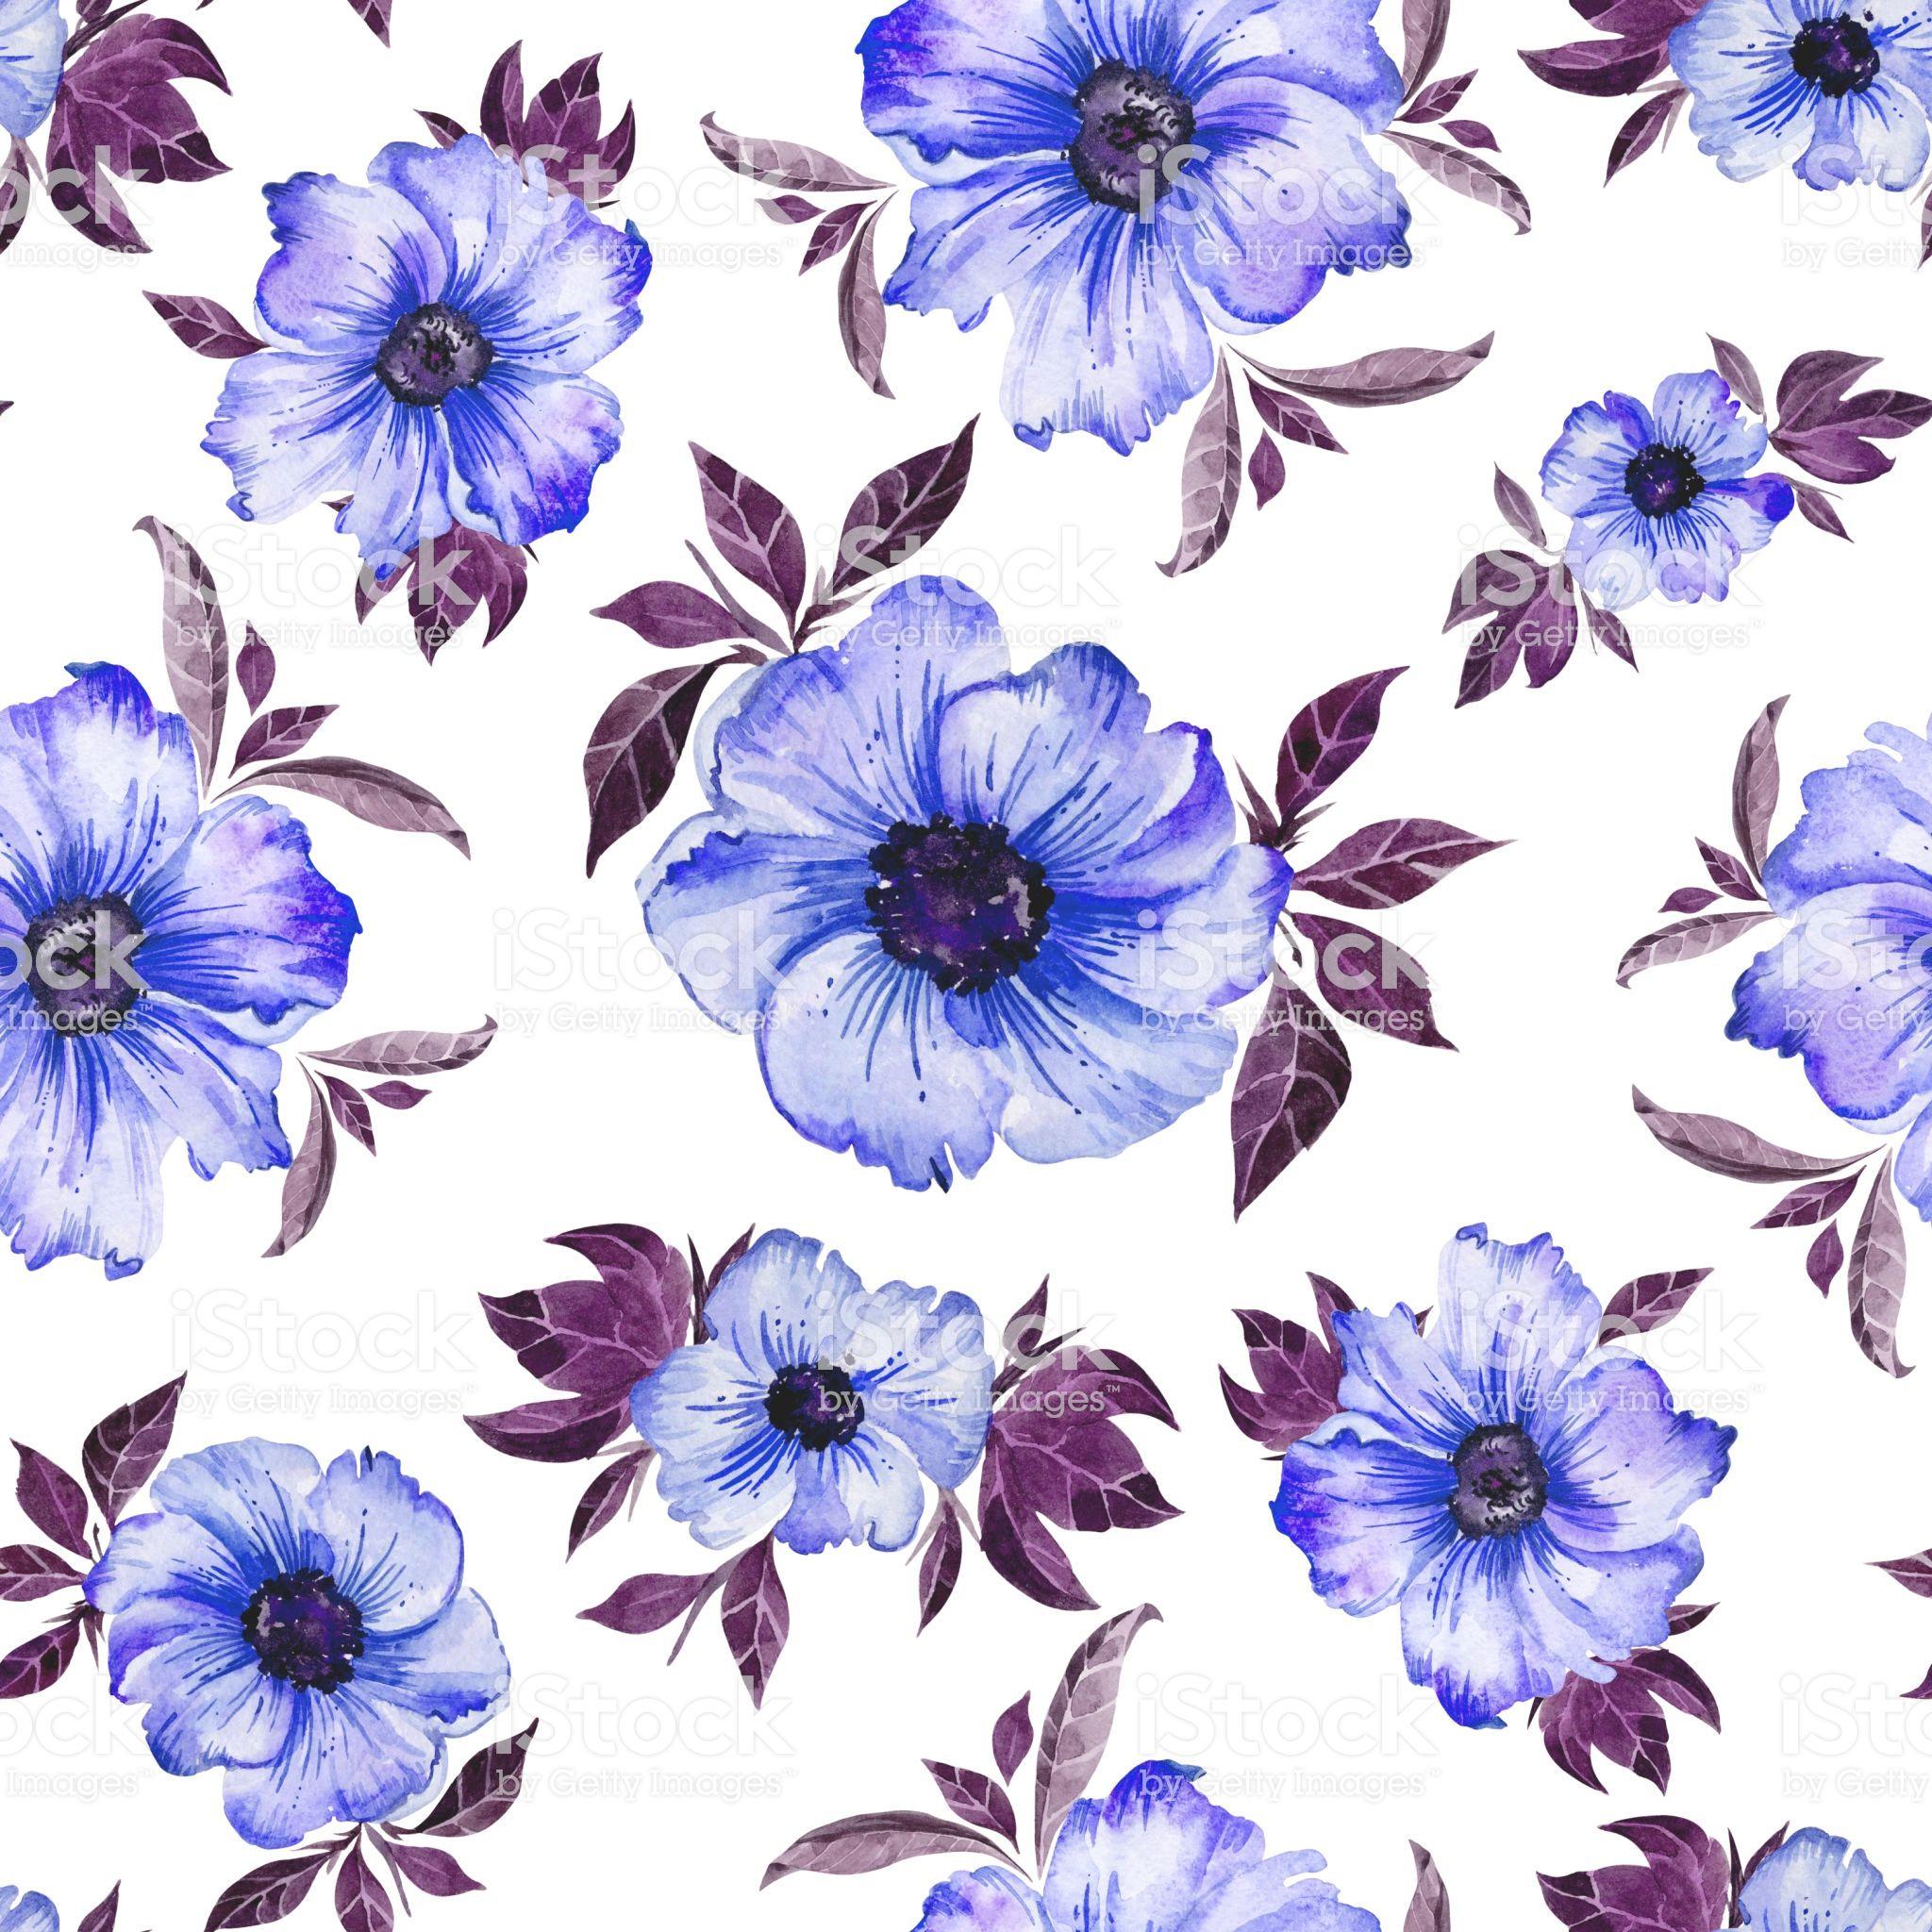 2048x2048 Những bông hoa đơn giản màu xanh lam đẹp với những chiếc lá màu tím trên nền trắng .. Hoa màu tím và trắng, Nền màu tím, Mô hình màu nước